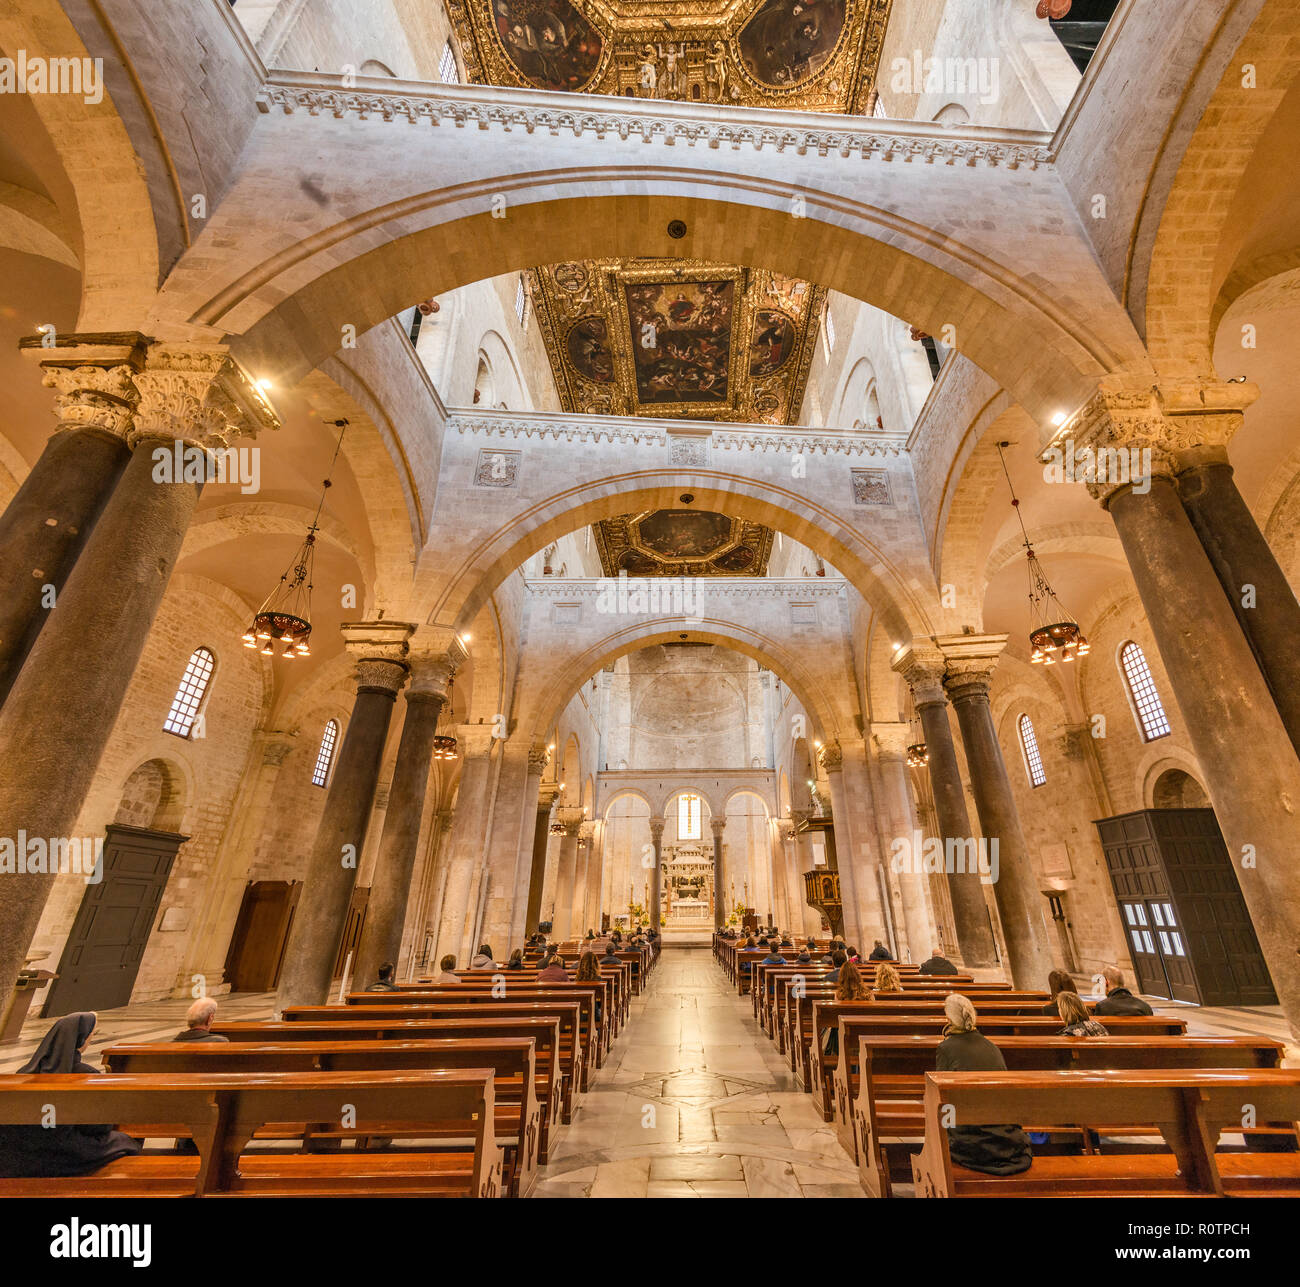 Interior of Basilica di San Nicola, 12th century, Romanesque style, in Bari, Apulia, Italy Stock Photo